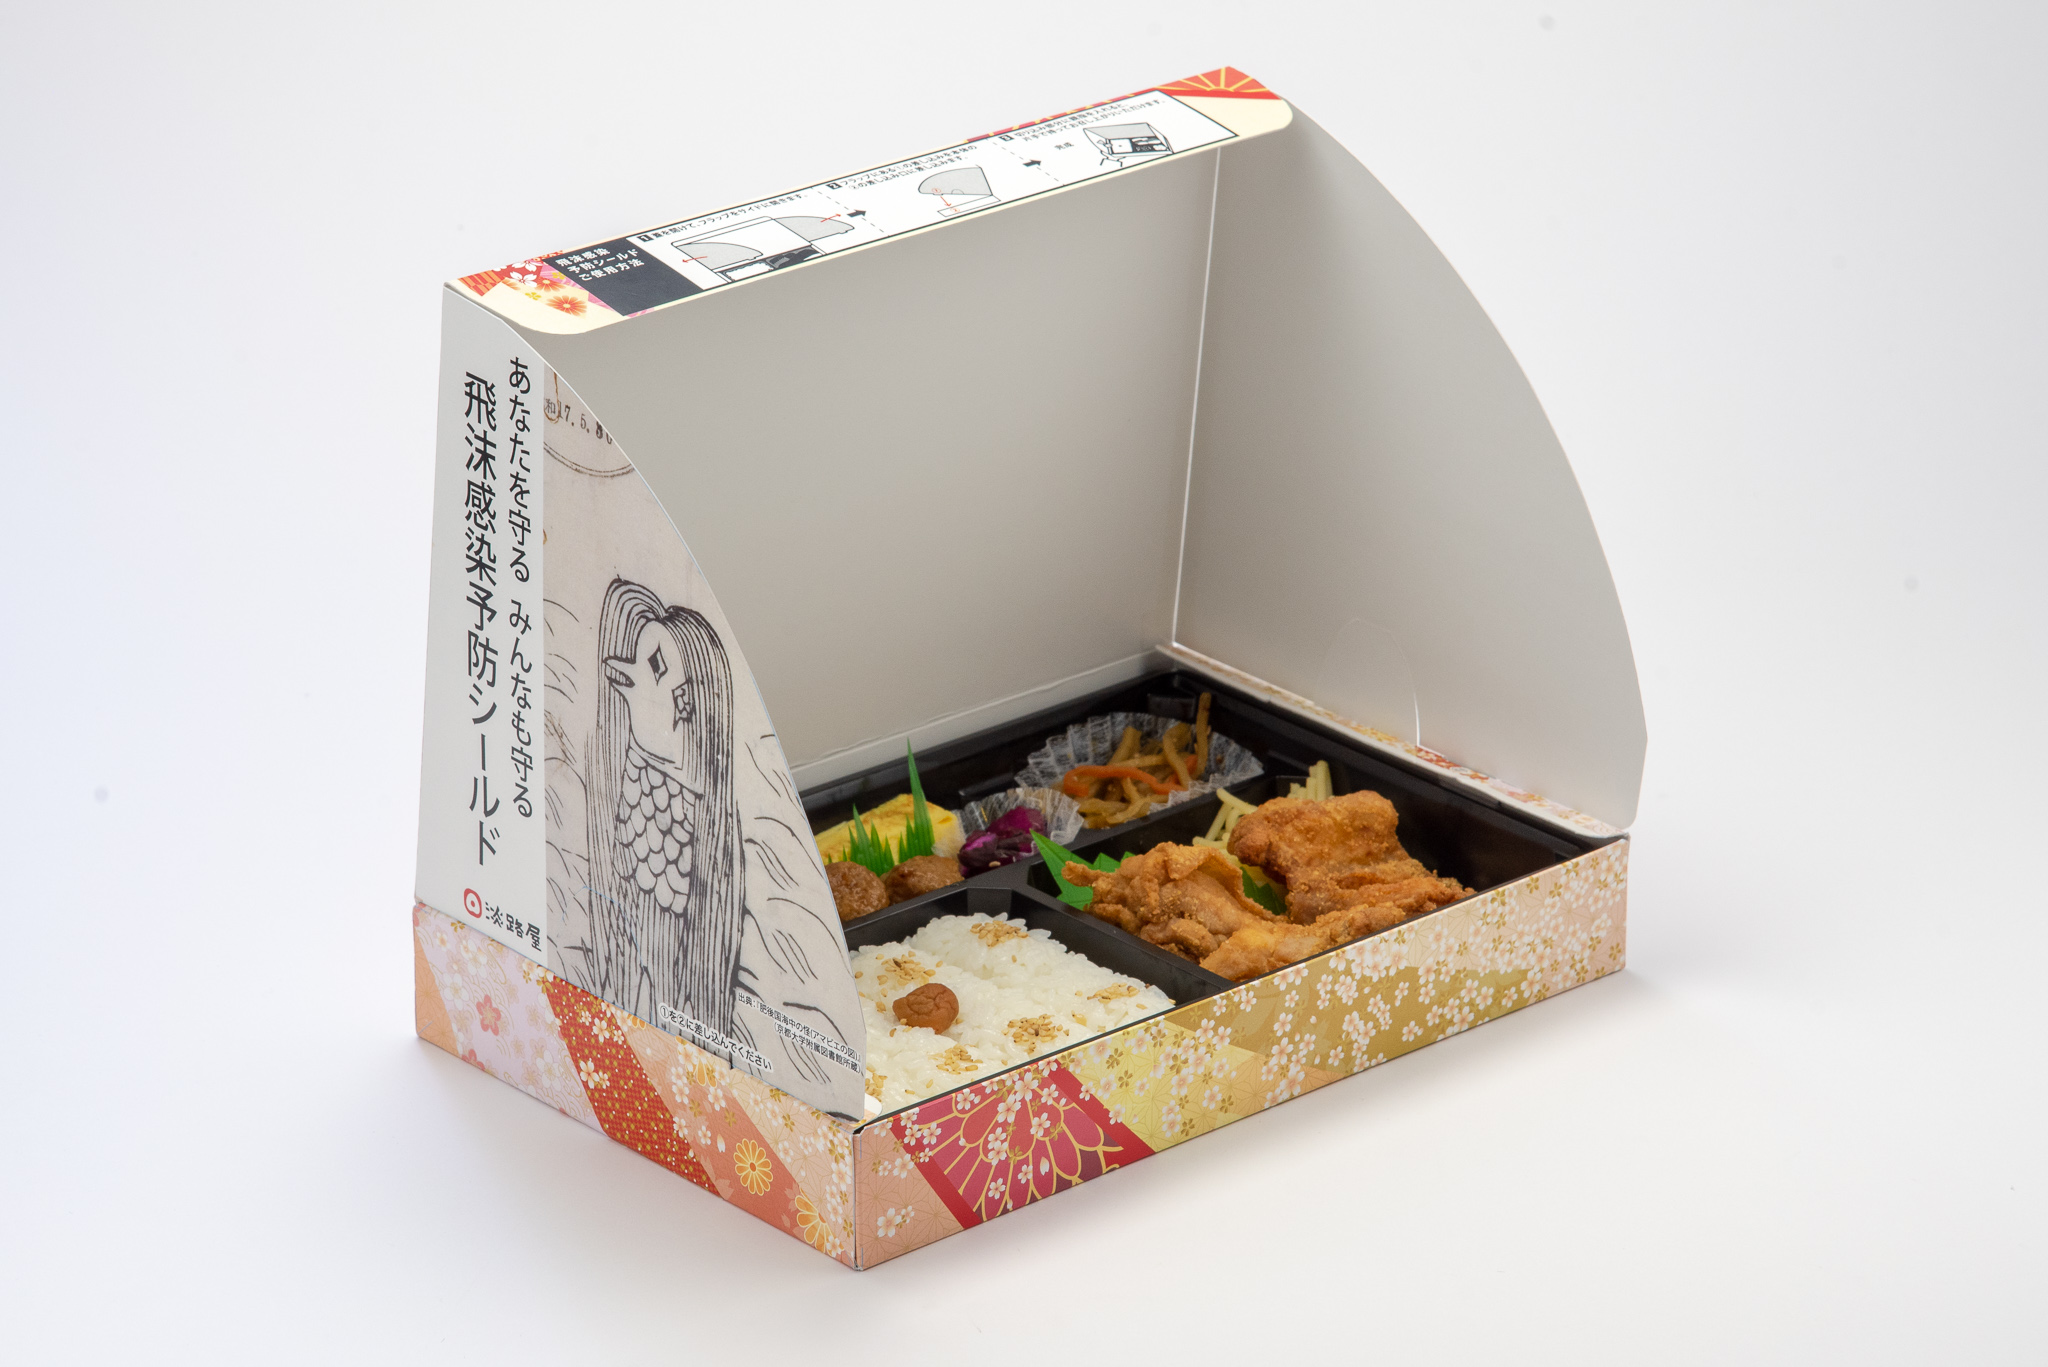 Obento mit Spuckschutz: Die neuartige Lunchbox von Awajiya.